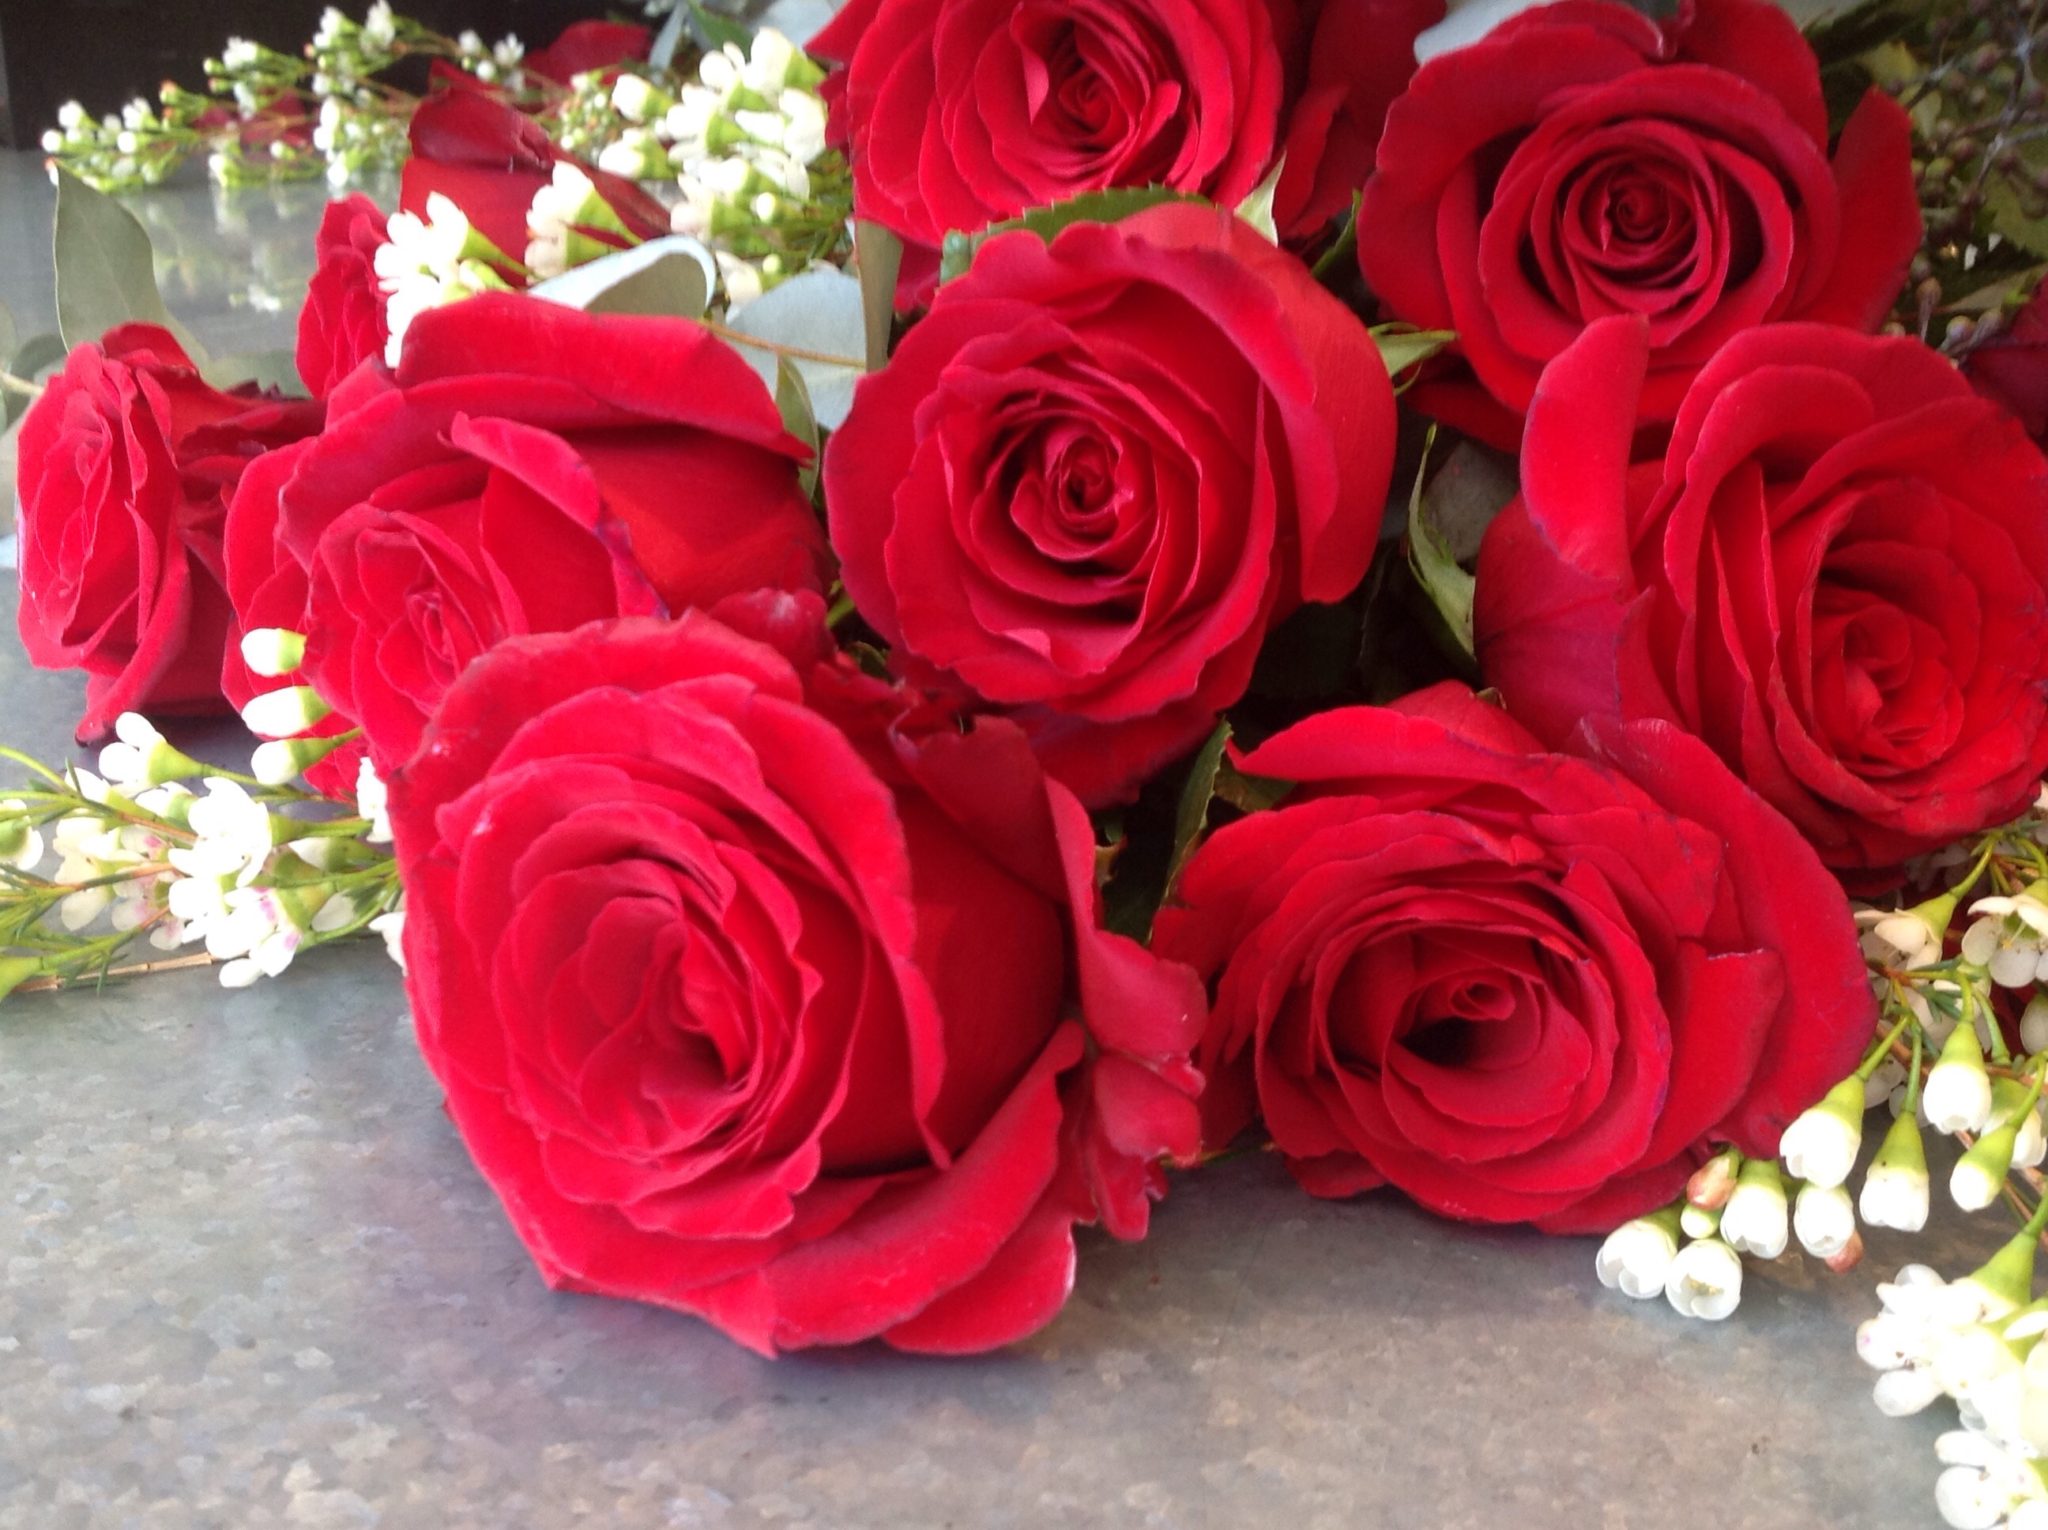 Expert Rose & Flower Care Tips